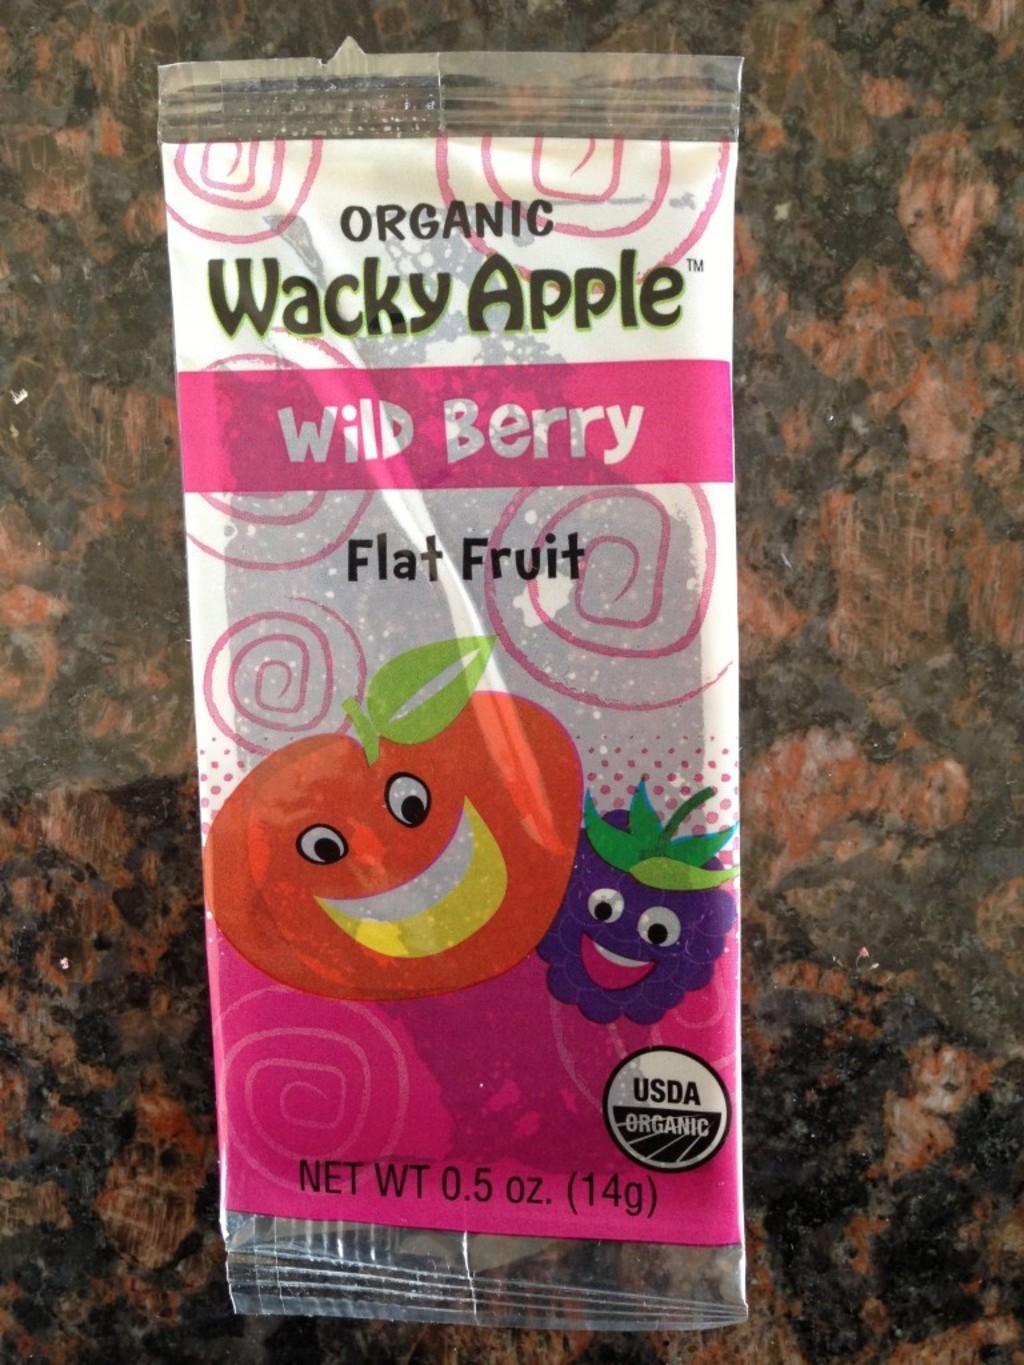 Wild Berry Flat Fruit by Wacky Apple